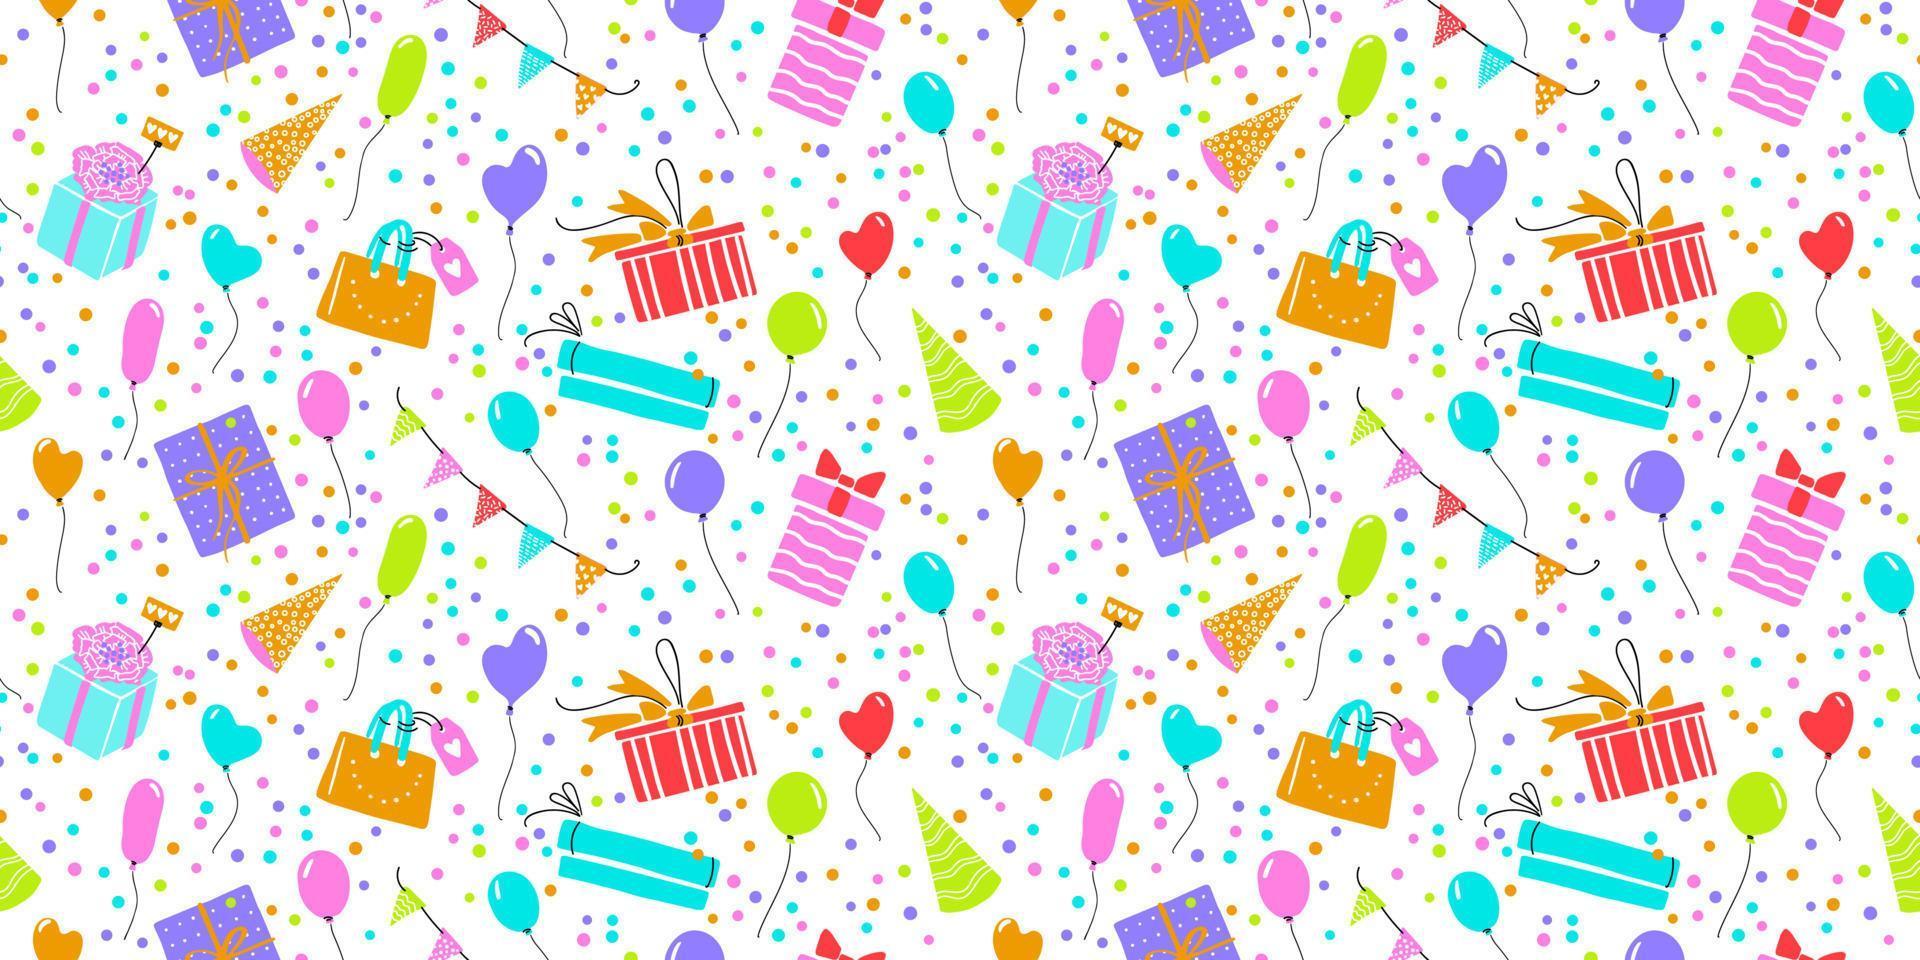 patrón transparente de vector de celebración con cajas de regalo, confeti, globos. fondo repetible colorido simple feliz cumpleaños.